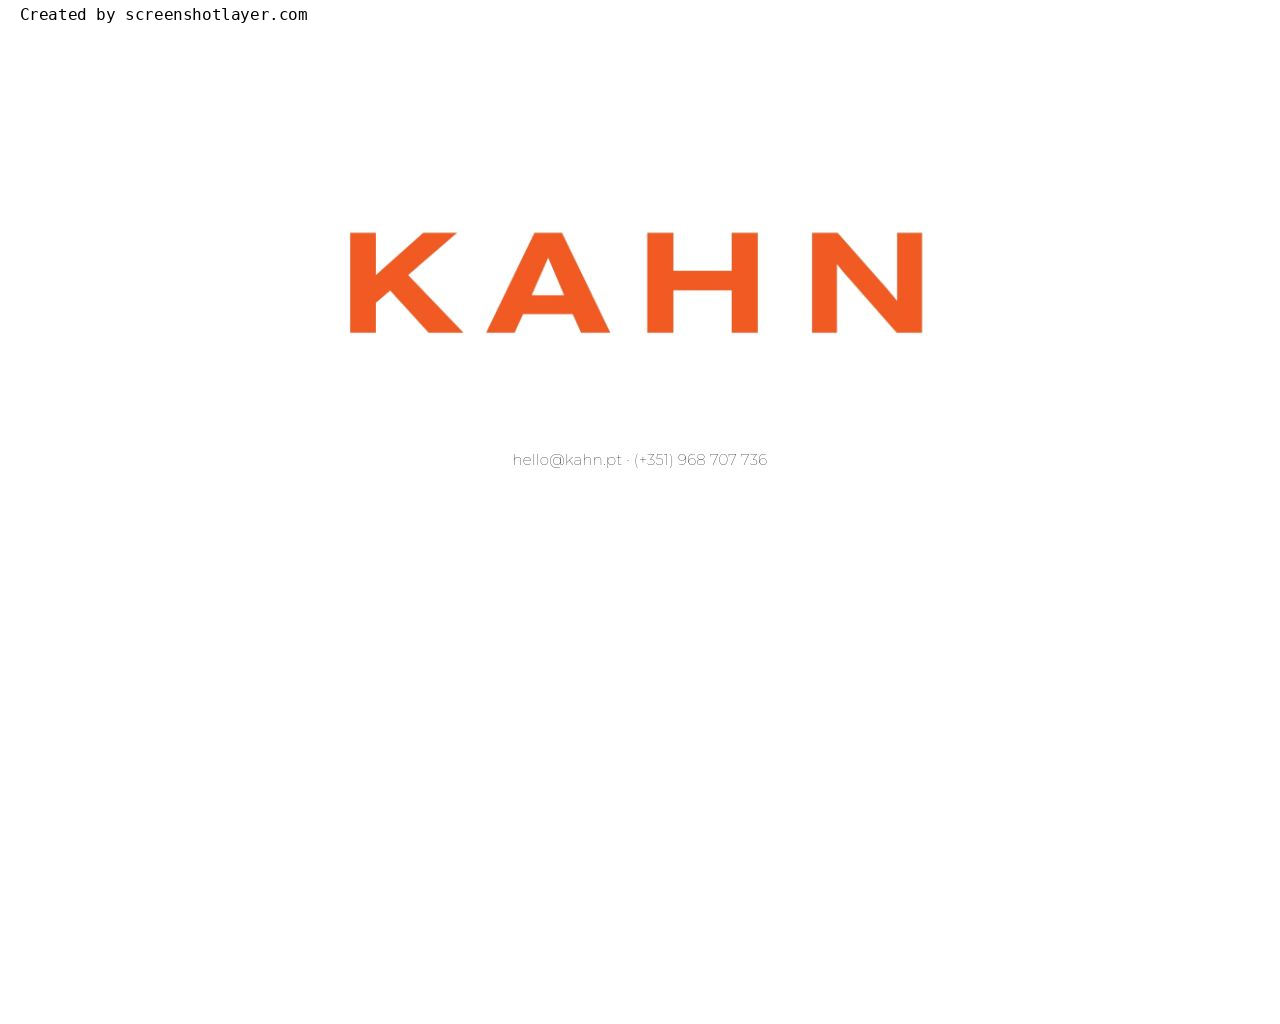 Site de imagem kahn.pt em 1280x1024